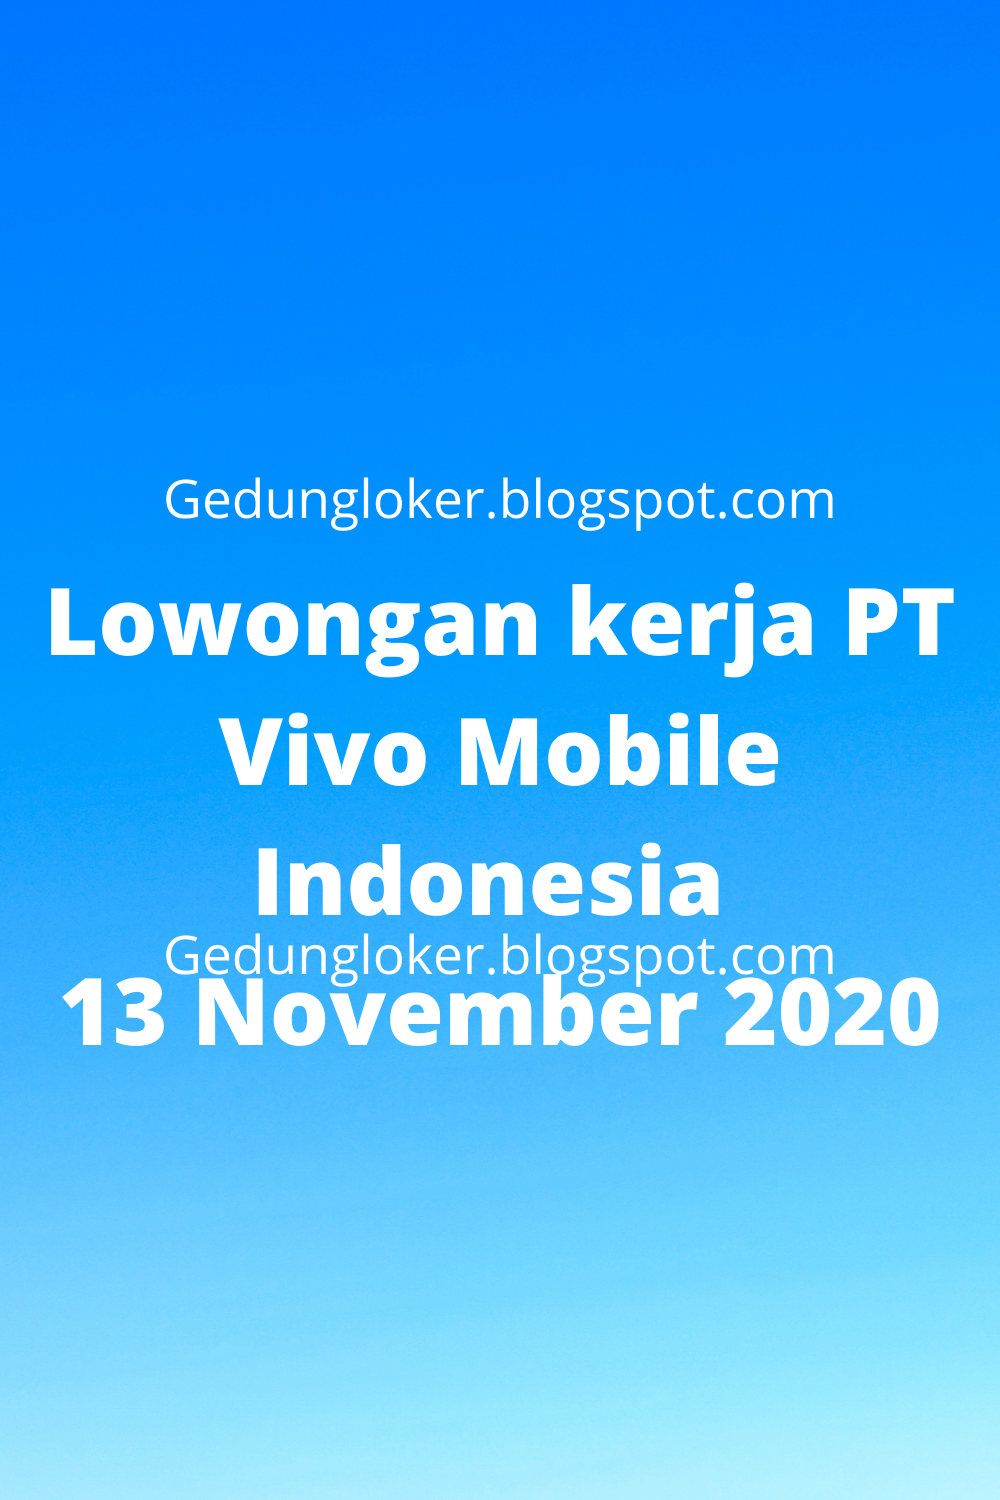 Lowongan kerja PT Vivo Mobile Indonesia 13 November 2020